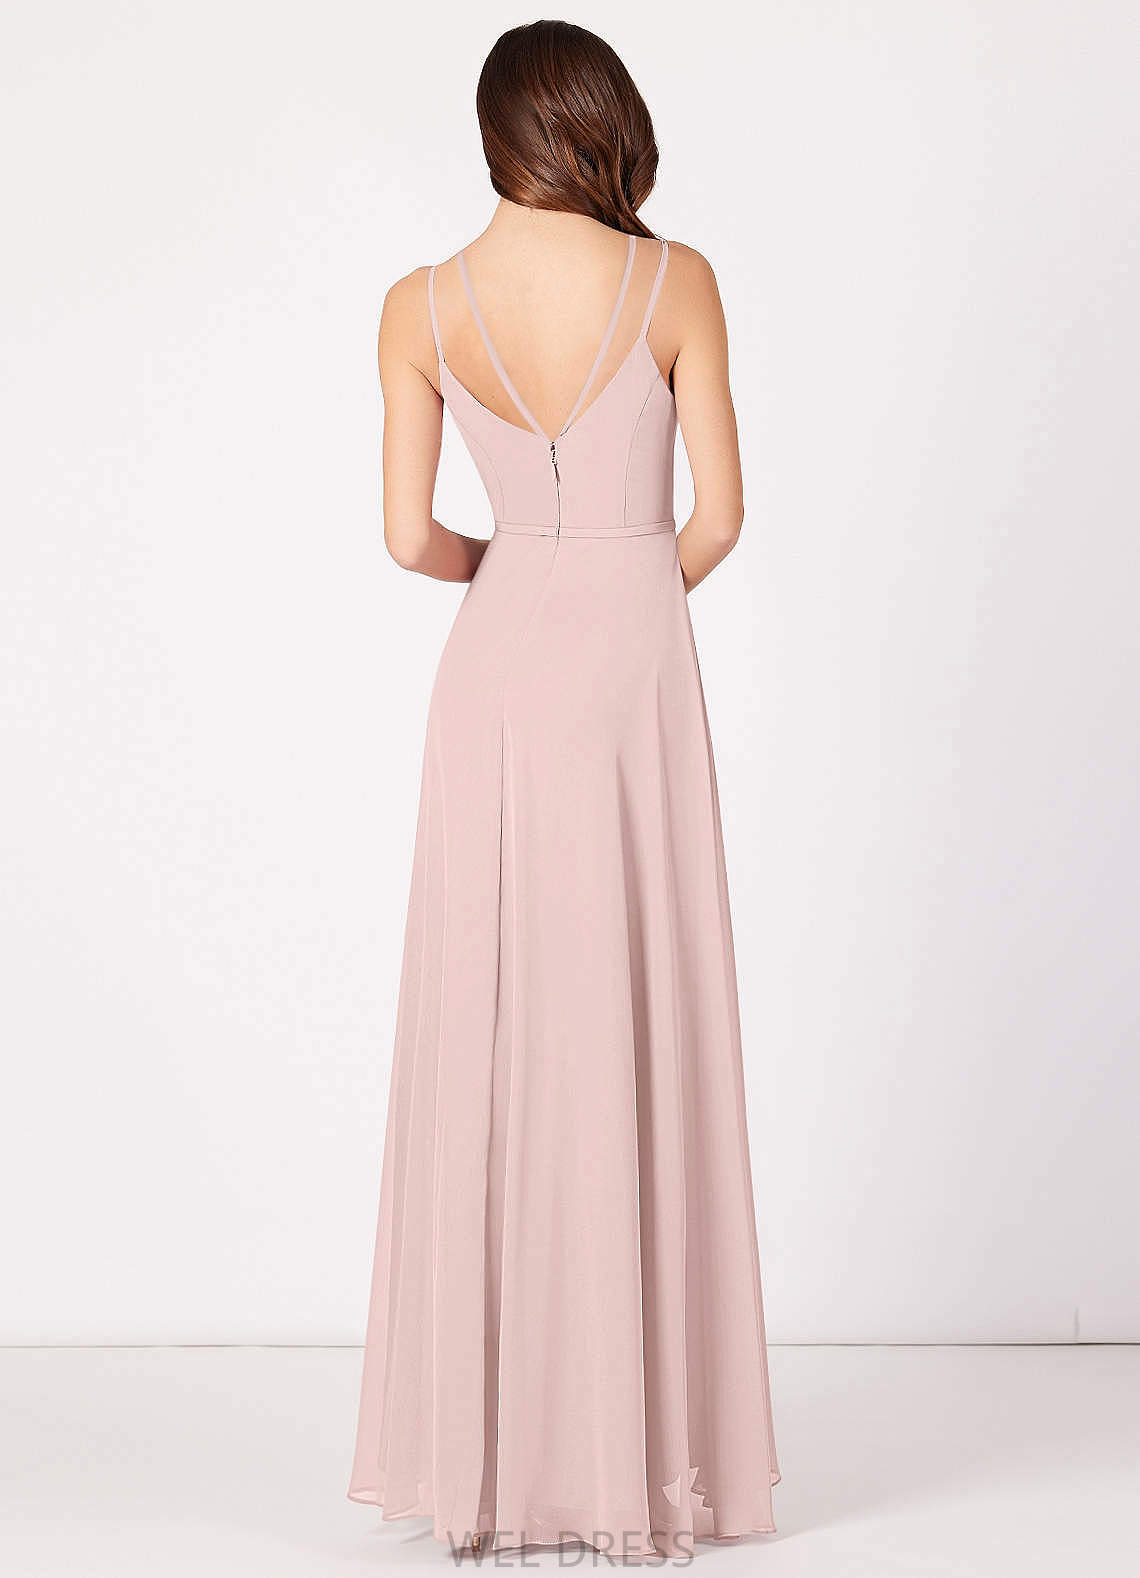 Daphne Sleeveless A-Line/Princess V-Neck Natural Waist Floor Length Bridesmaid Dresses